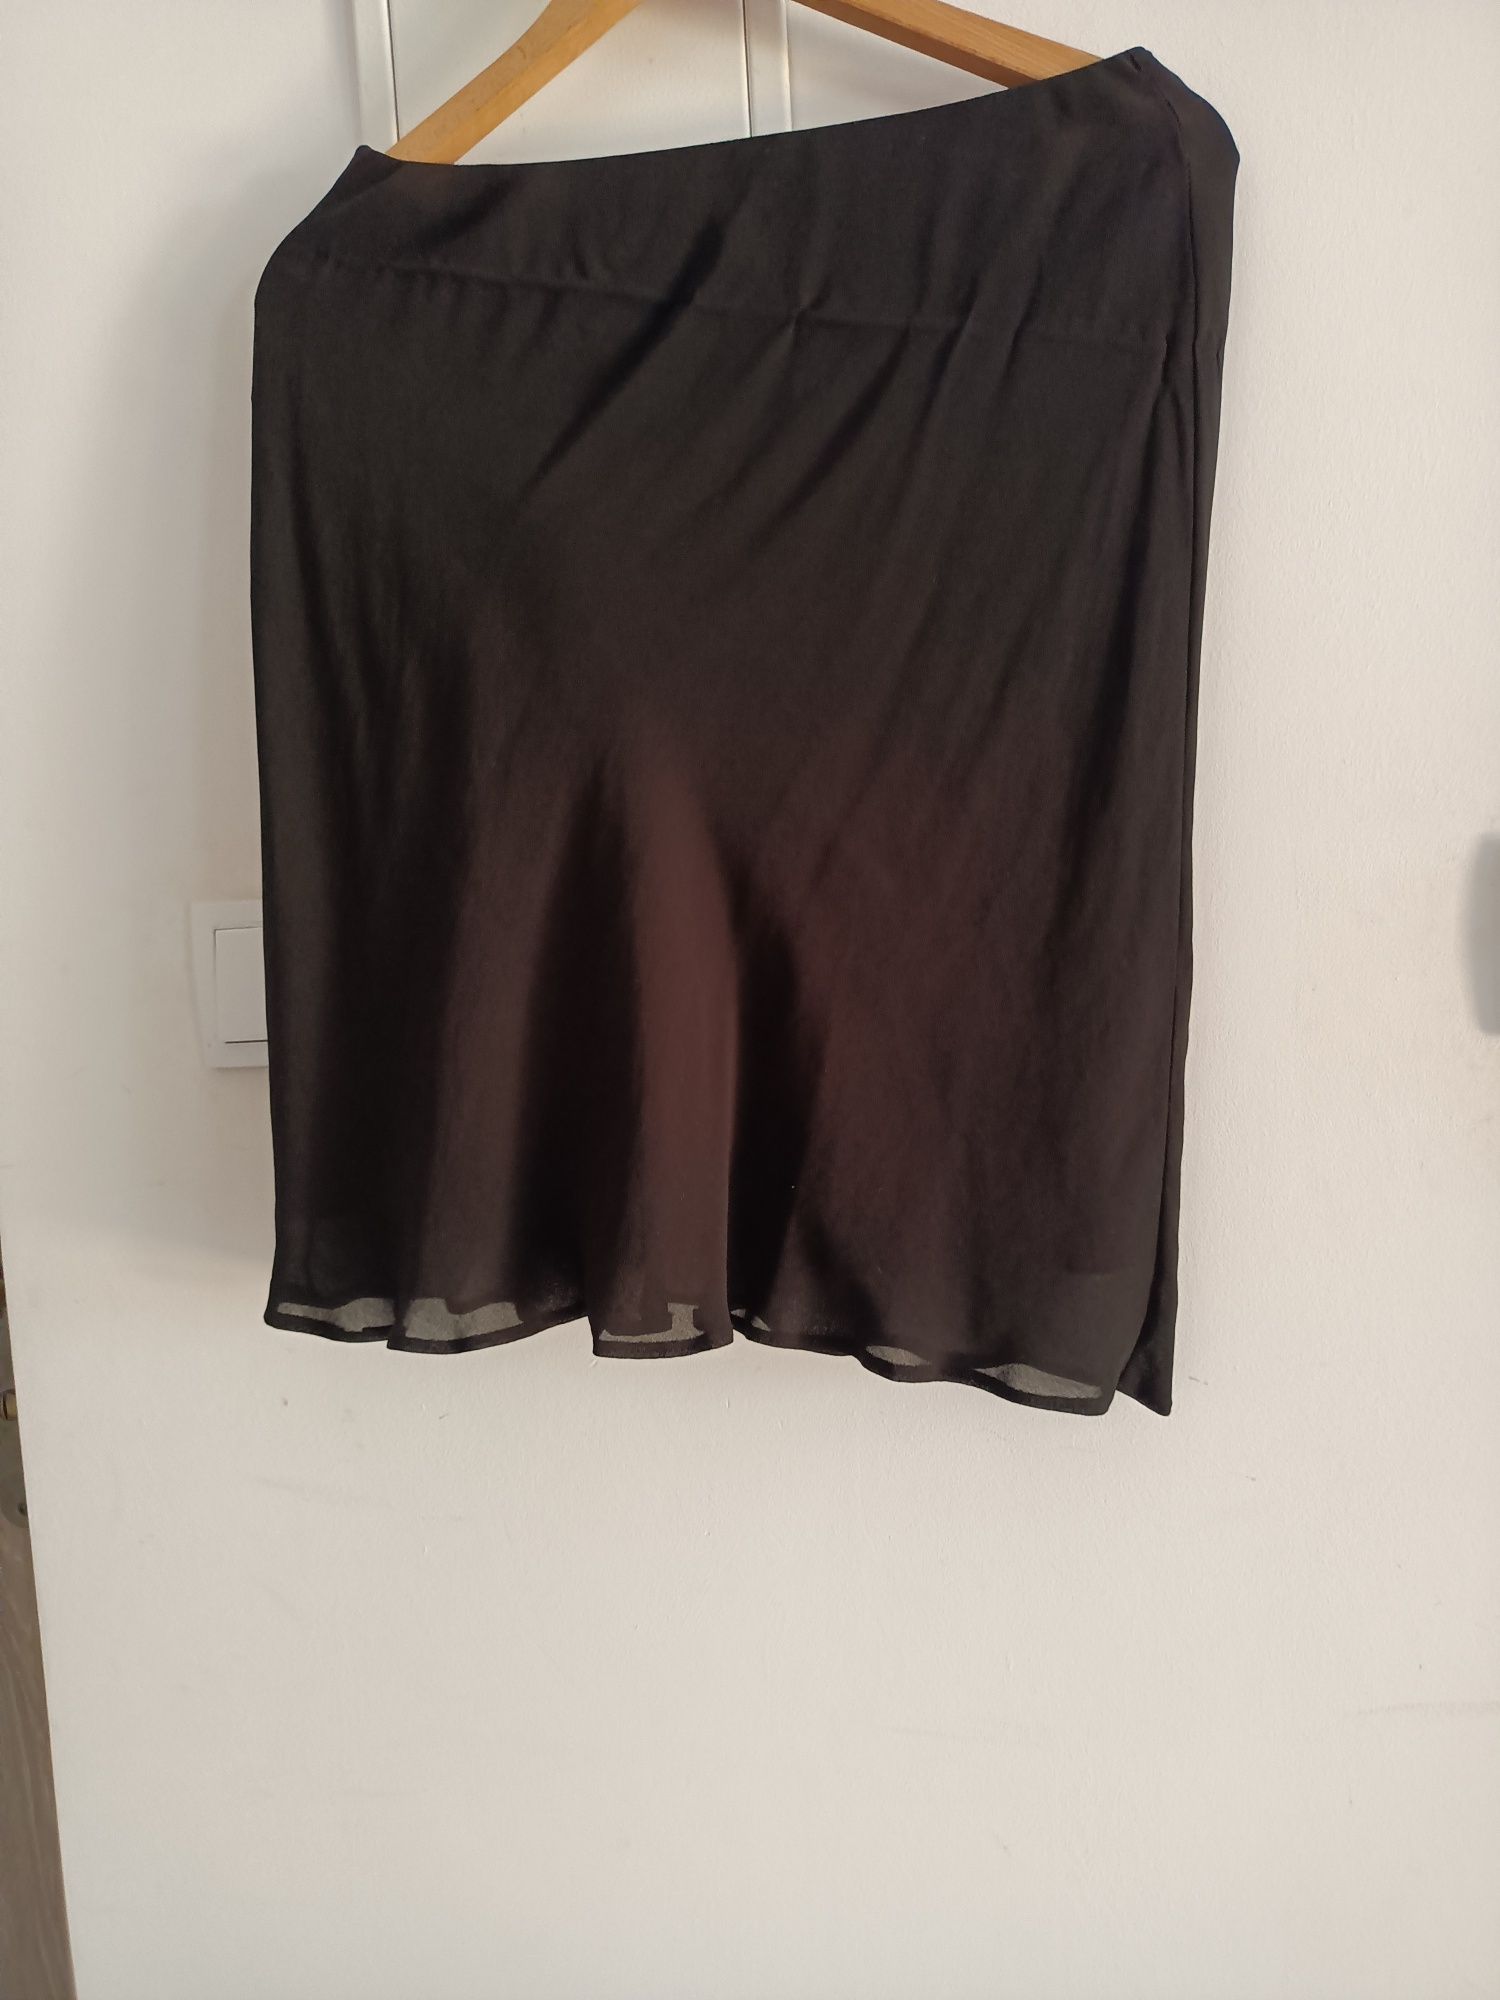 Spódnica damska czarna rozmiar 38